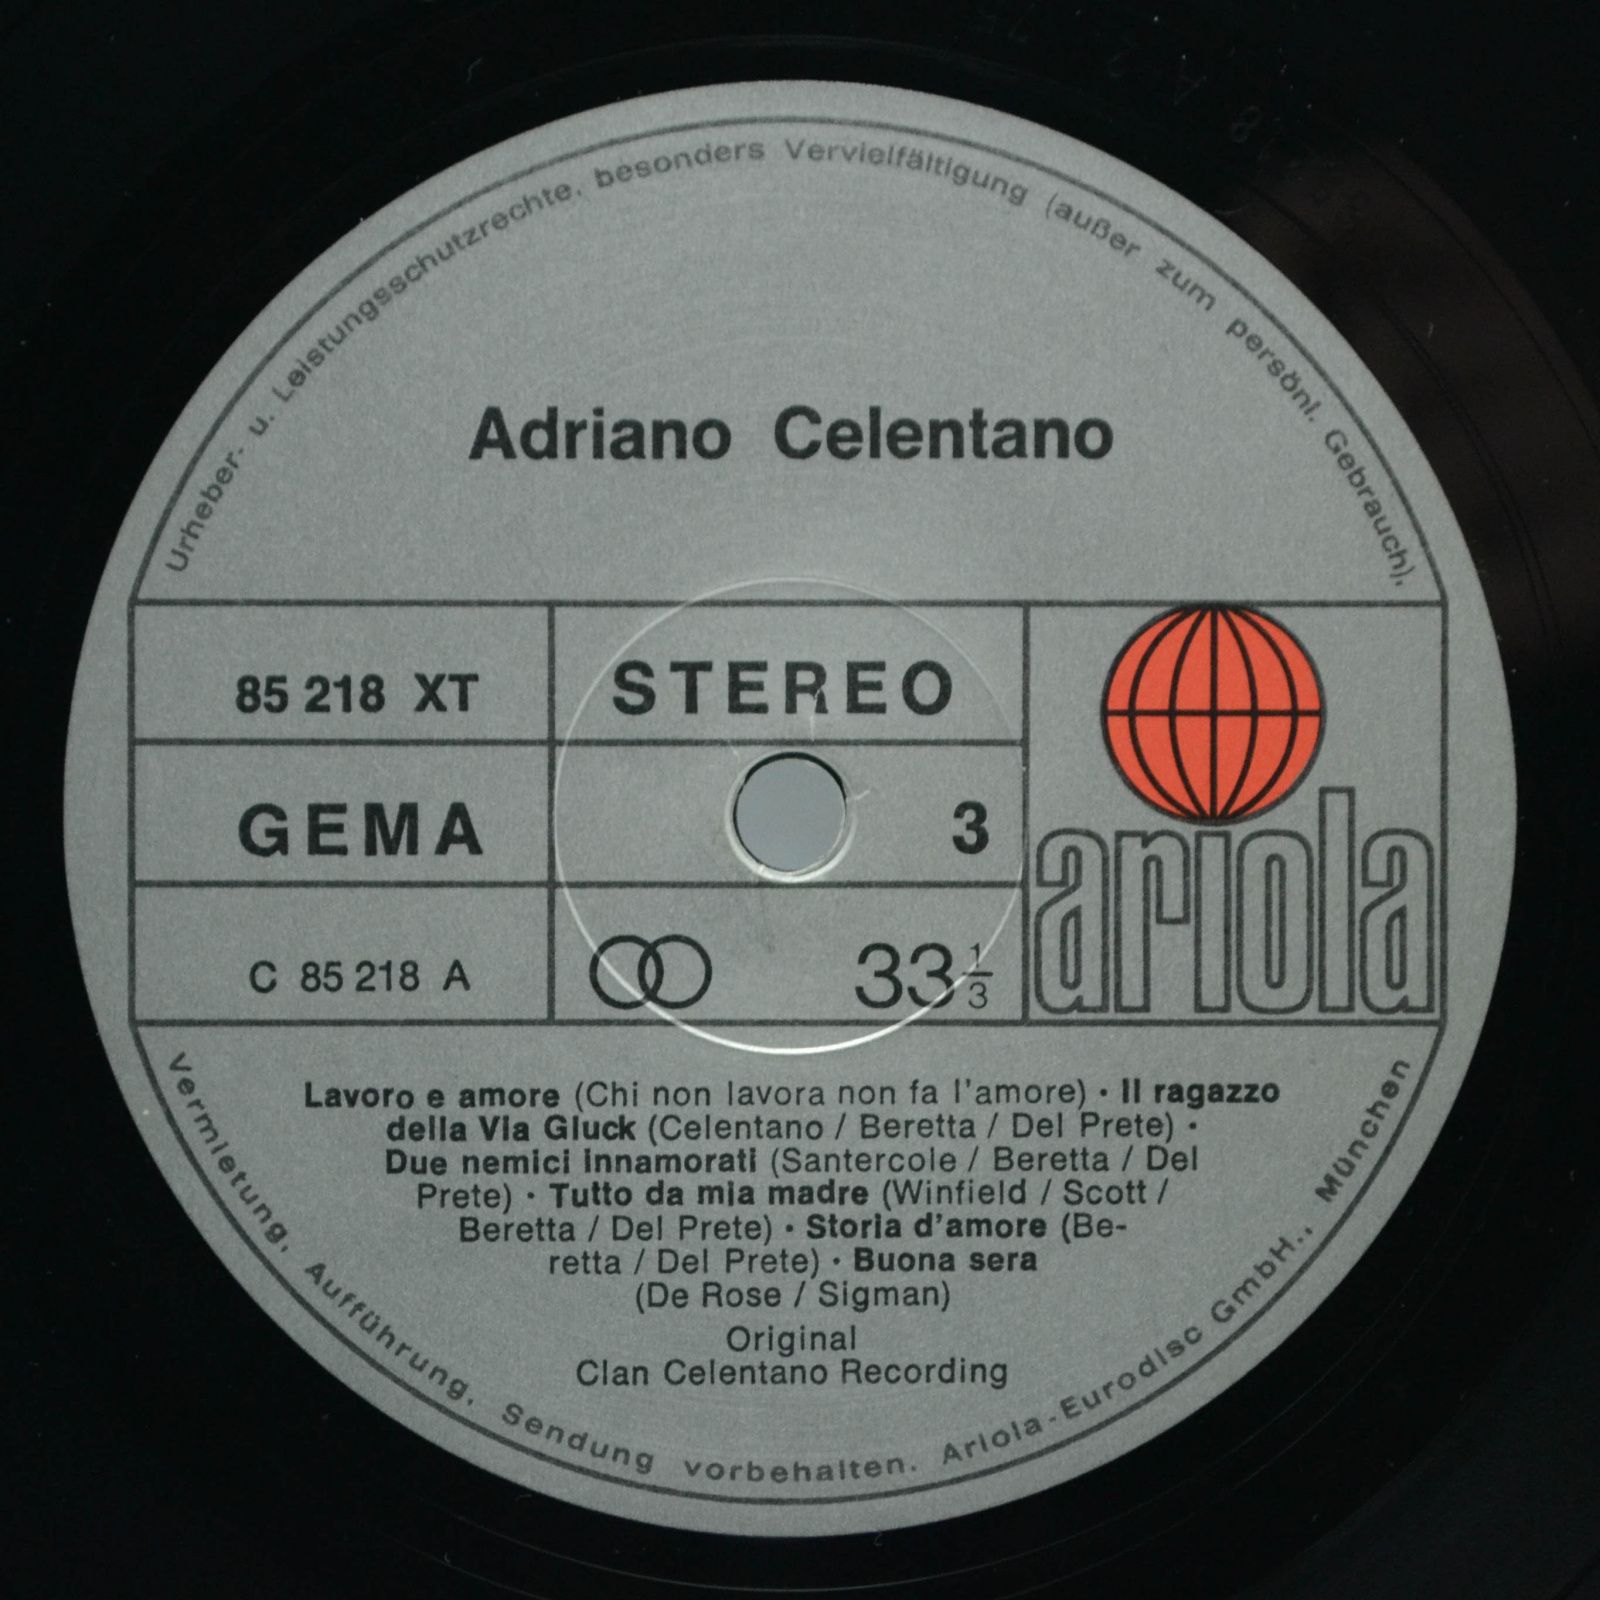 Adriano Celentano — Azzurro (2LP), 1971